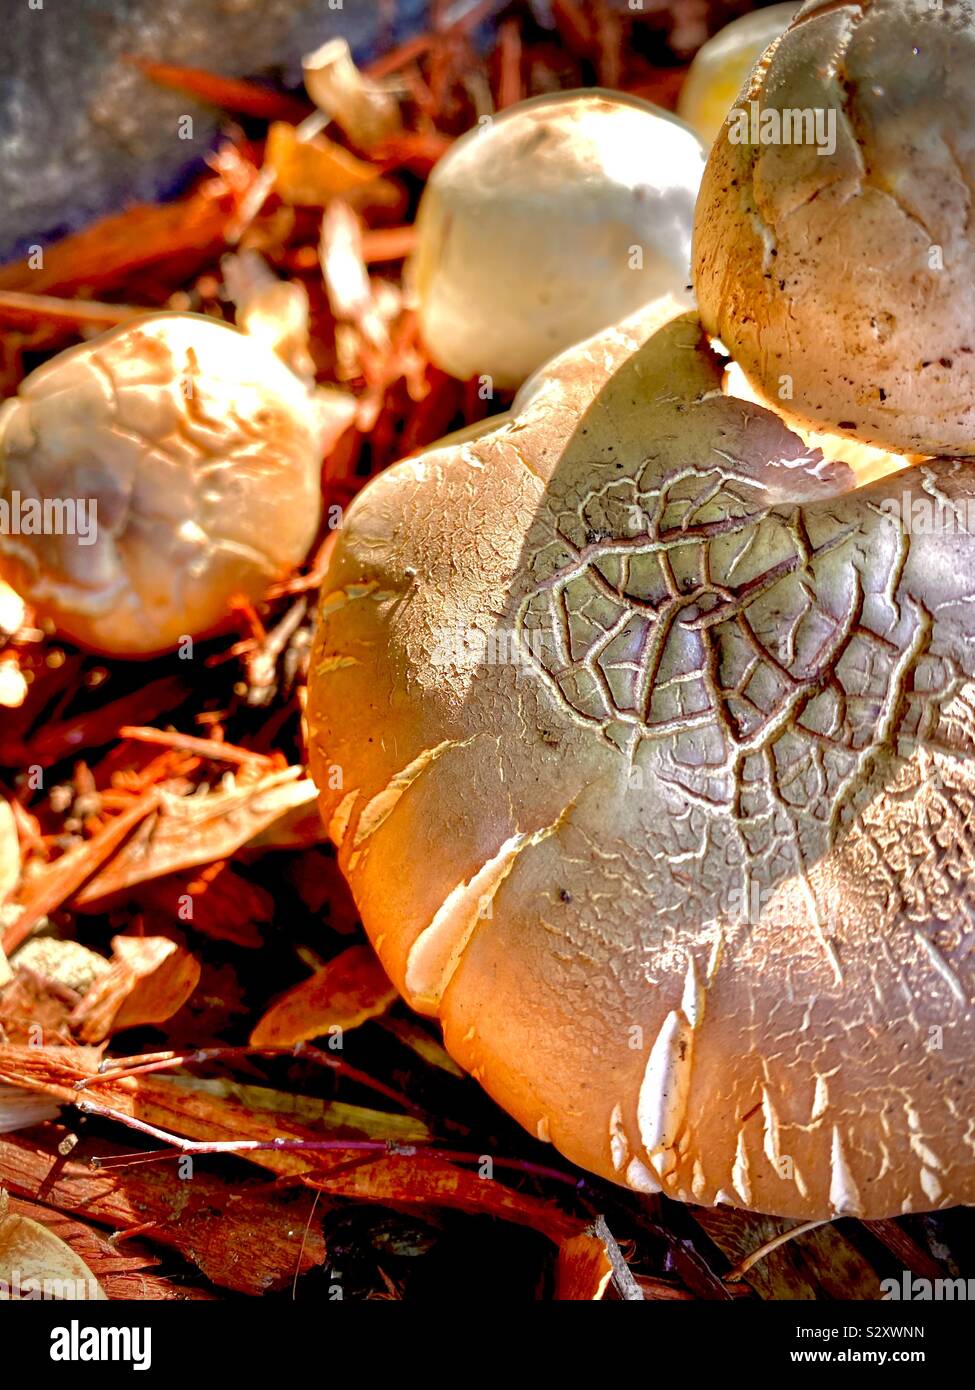 Les champignons en lumière dorée Banque D'Images